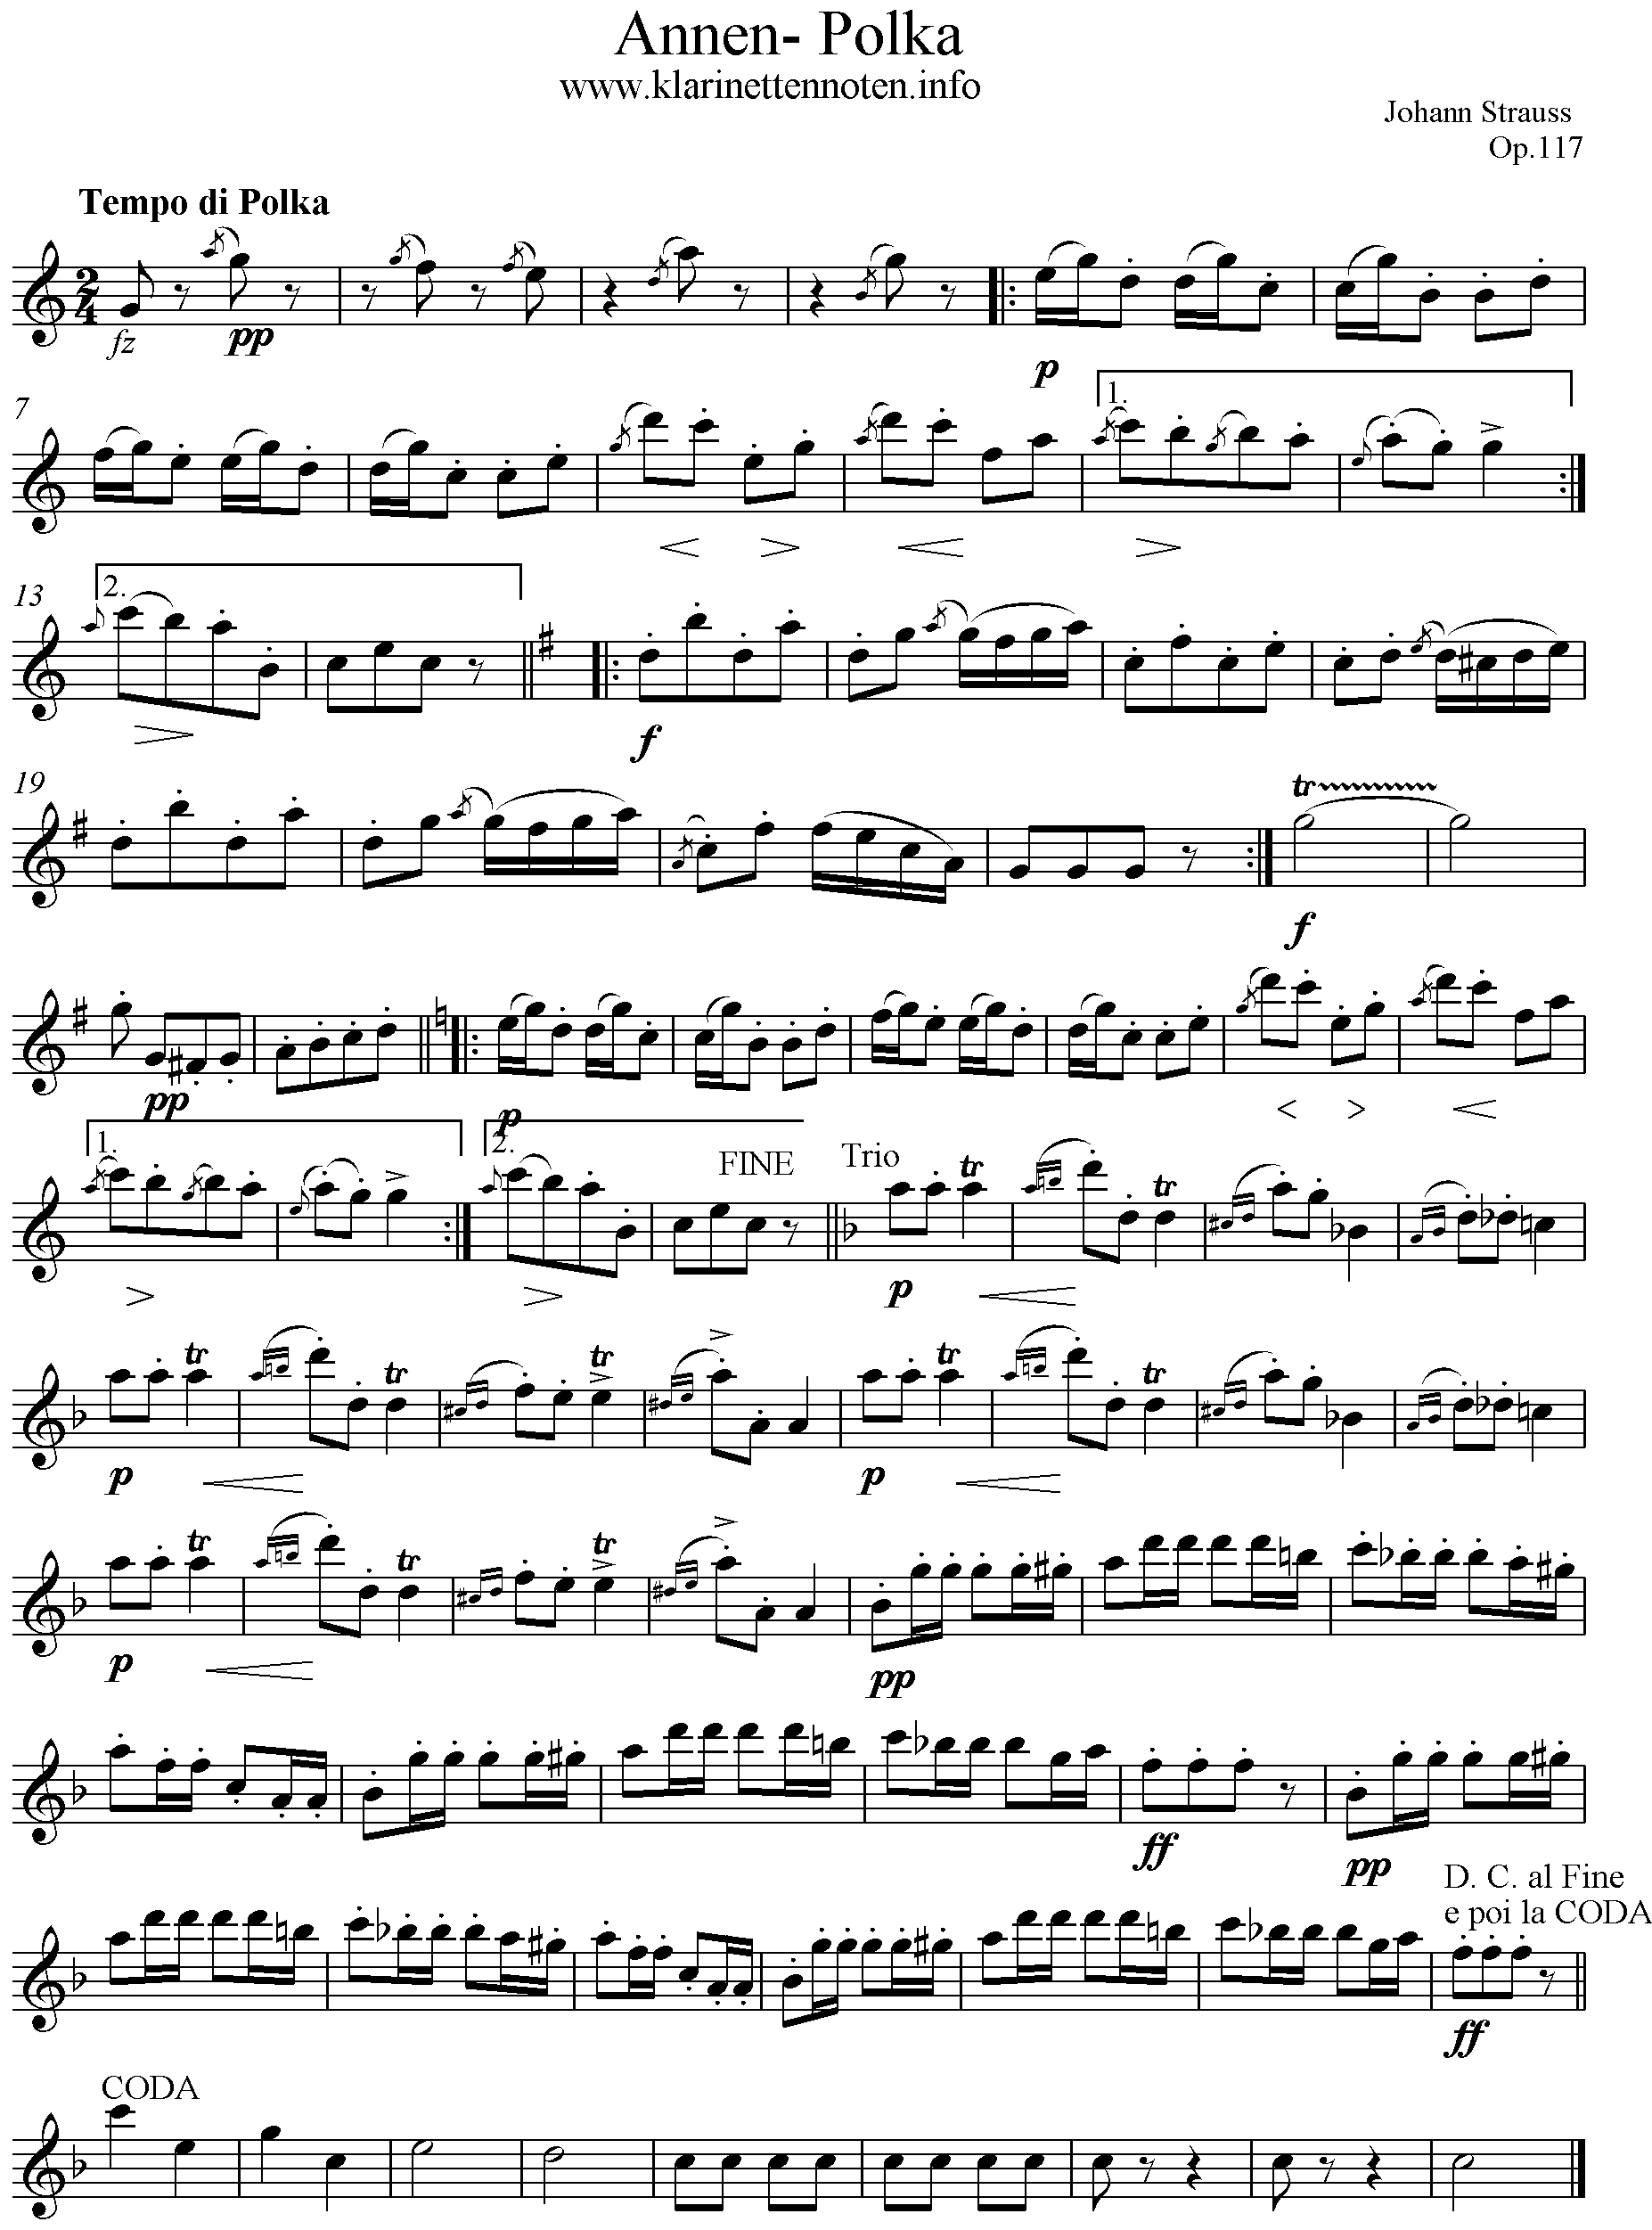 Annen Polka, op. 117, C-Dur